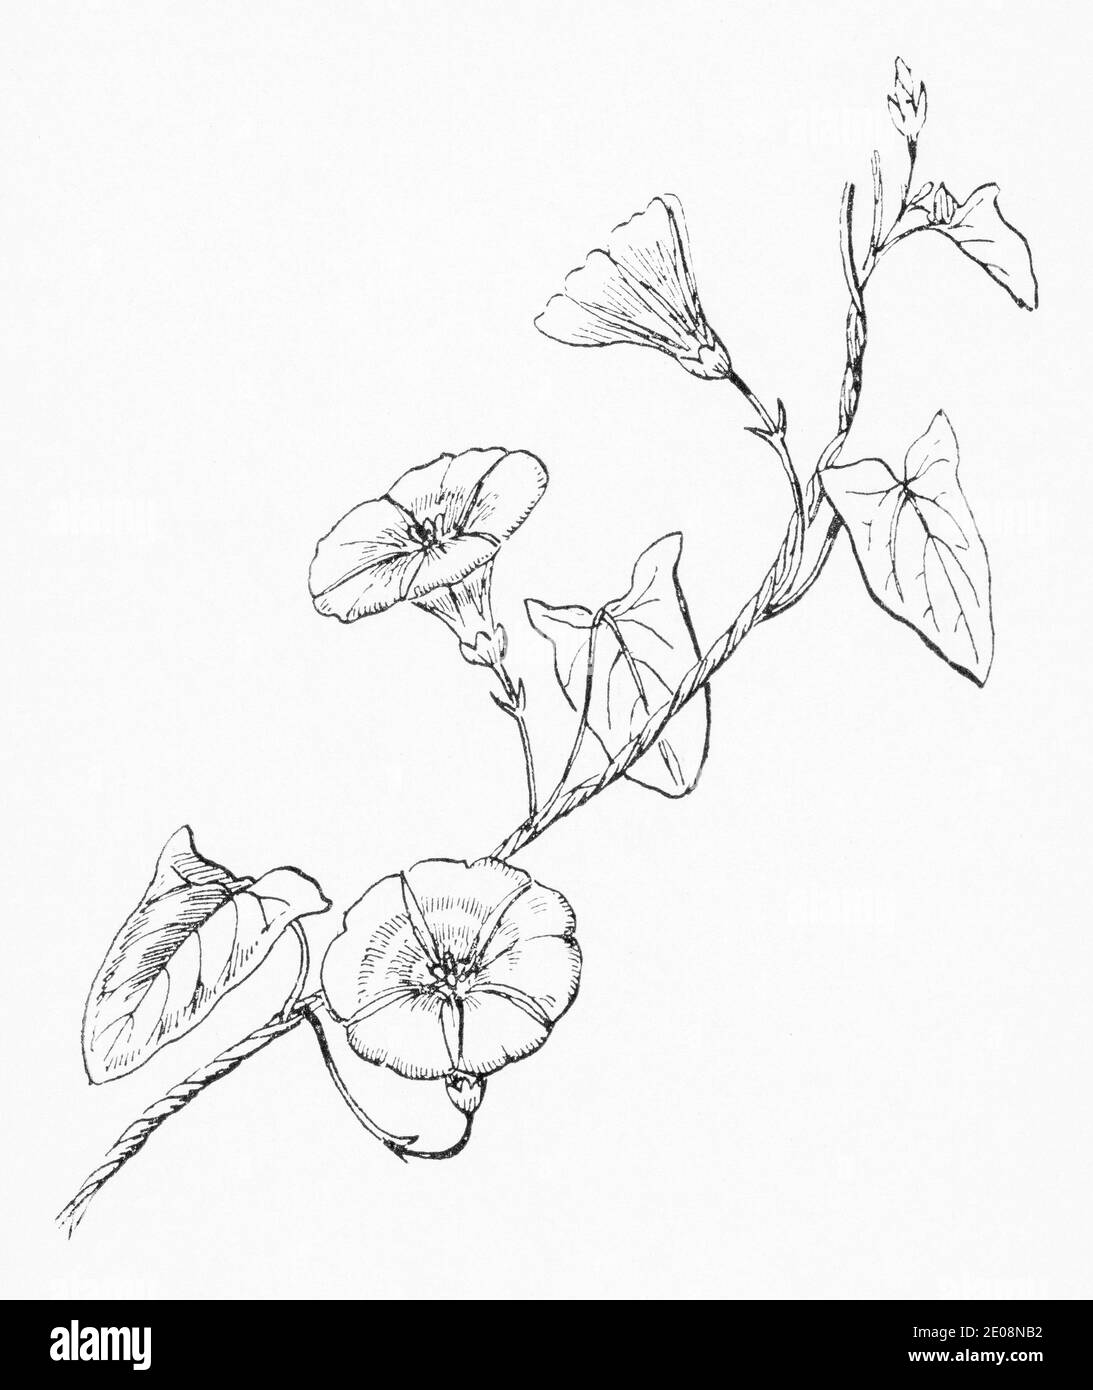 Ancienne gravure d'illustration botanique de Convolvulus arvensis / Field Bindweed. Plante médicinale traditionnelle. Voir Remarques Banque D'Images